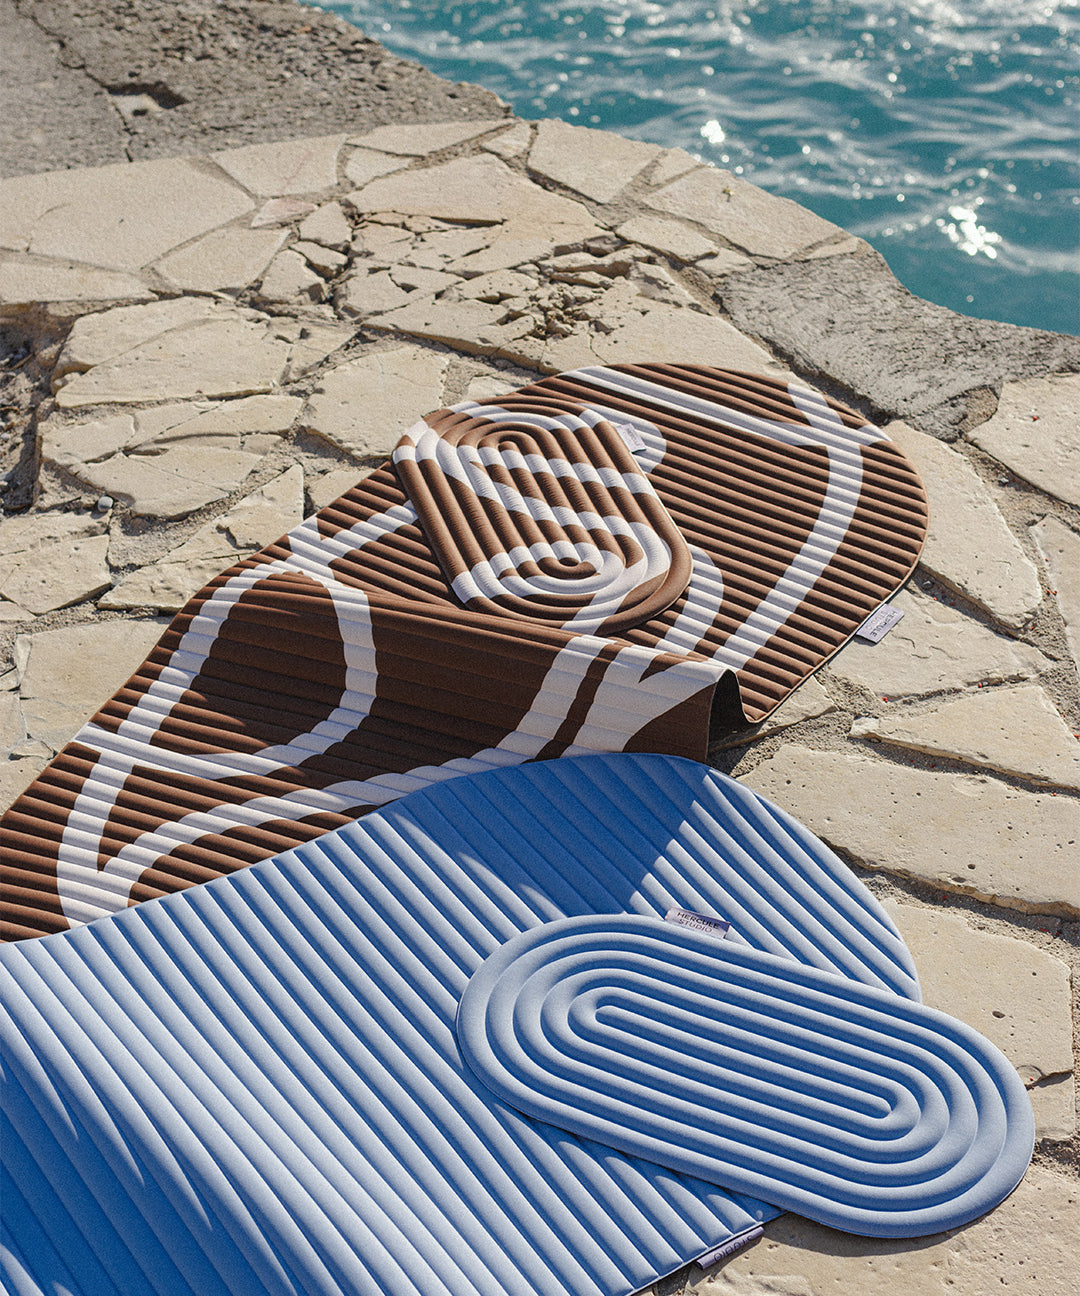 Mini tapis de sol pad de confort de la marque hercule studio modèle galé et tapis d'exercice archy couleur blue jean et imprimé bari choco packshot lifestyle